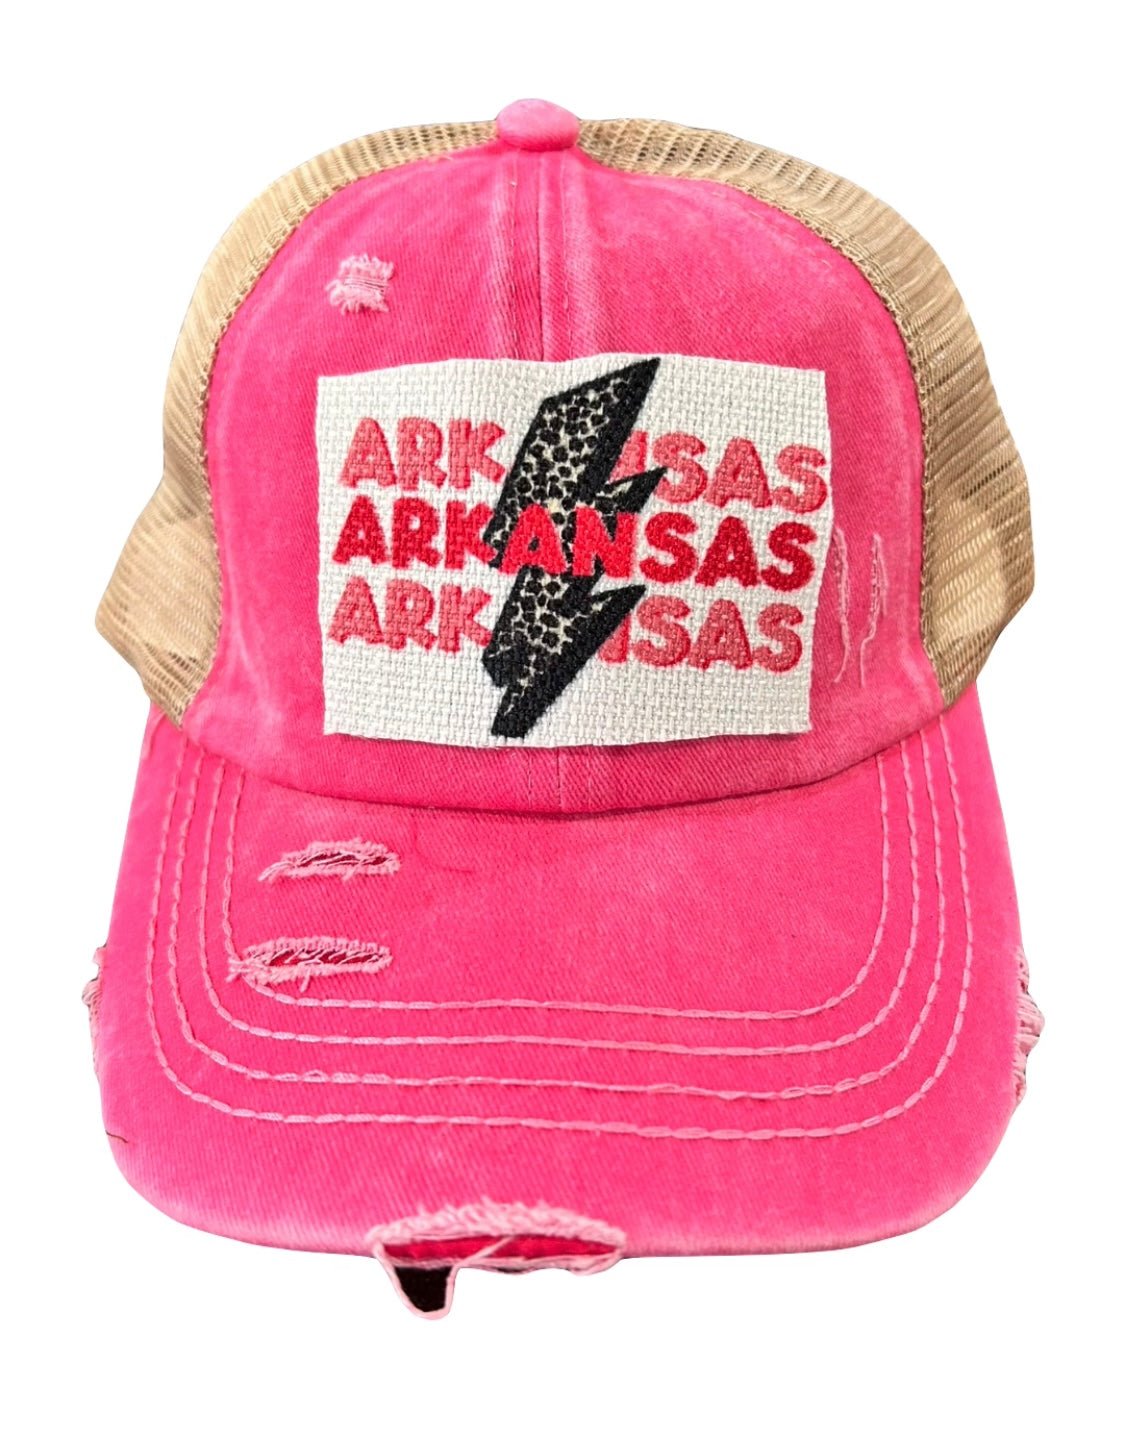 Arkansas Ball Cap - Hey Heifer Boutique